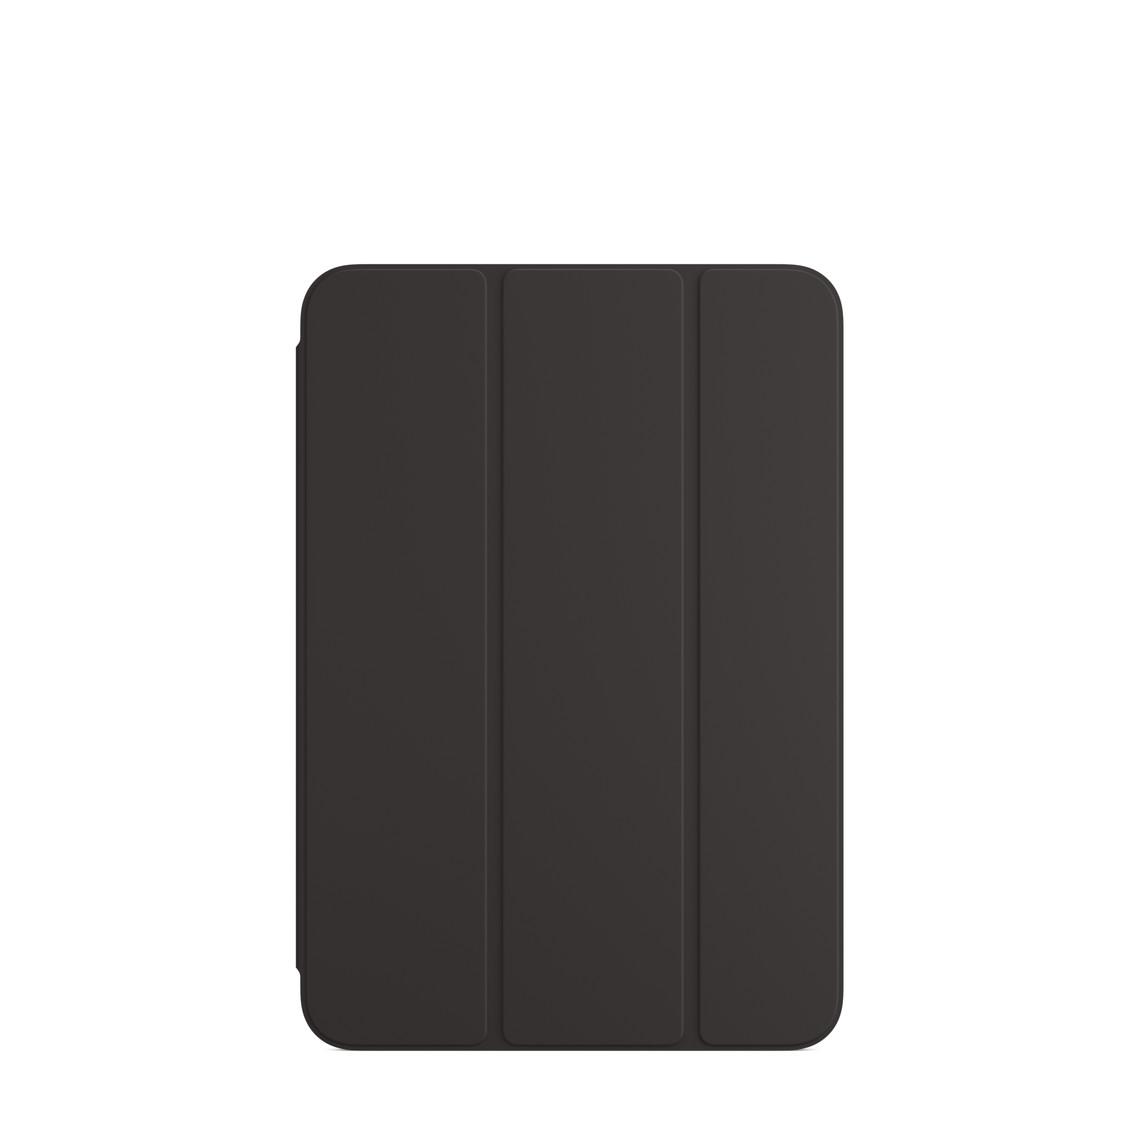 Smart Folio voor iPad mini (6e generatie) in zwart.